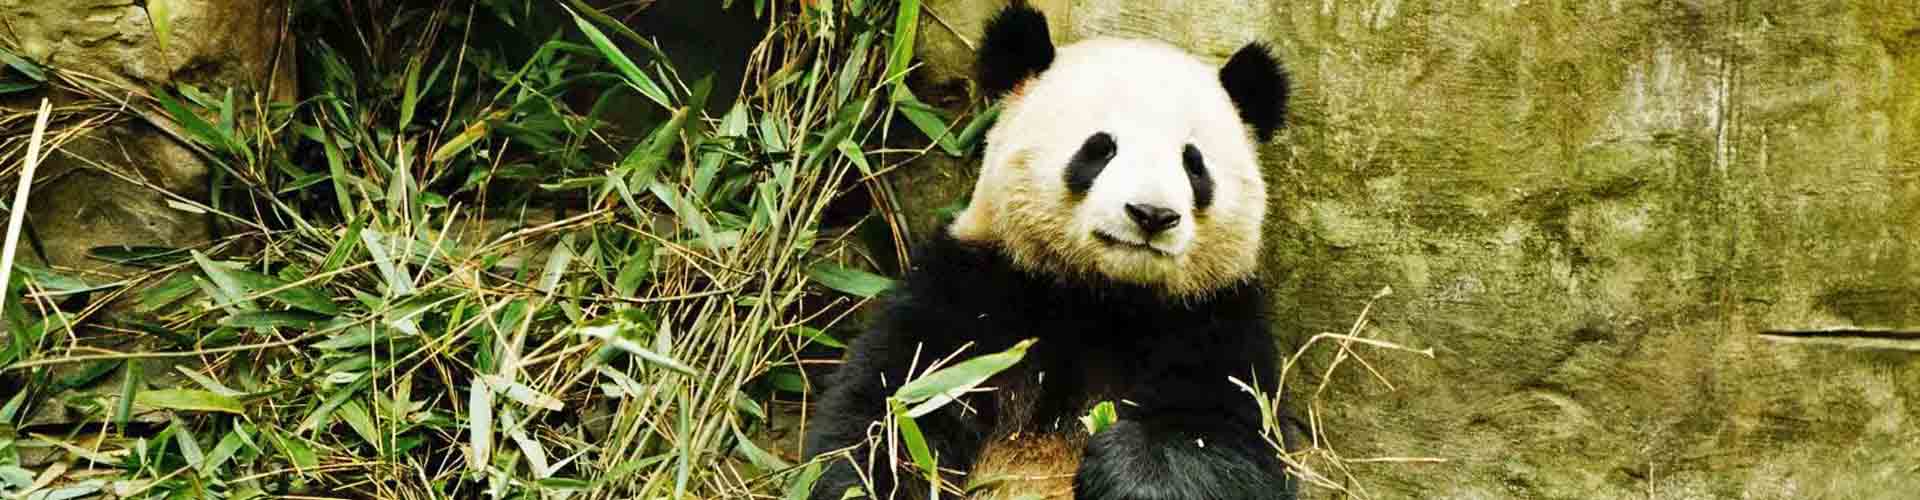 Panda dans la réserve de panda de Chengdu